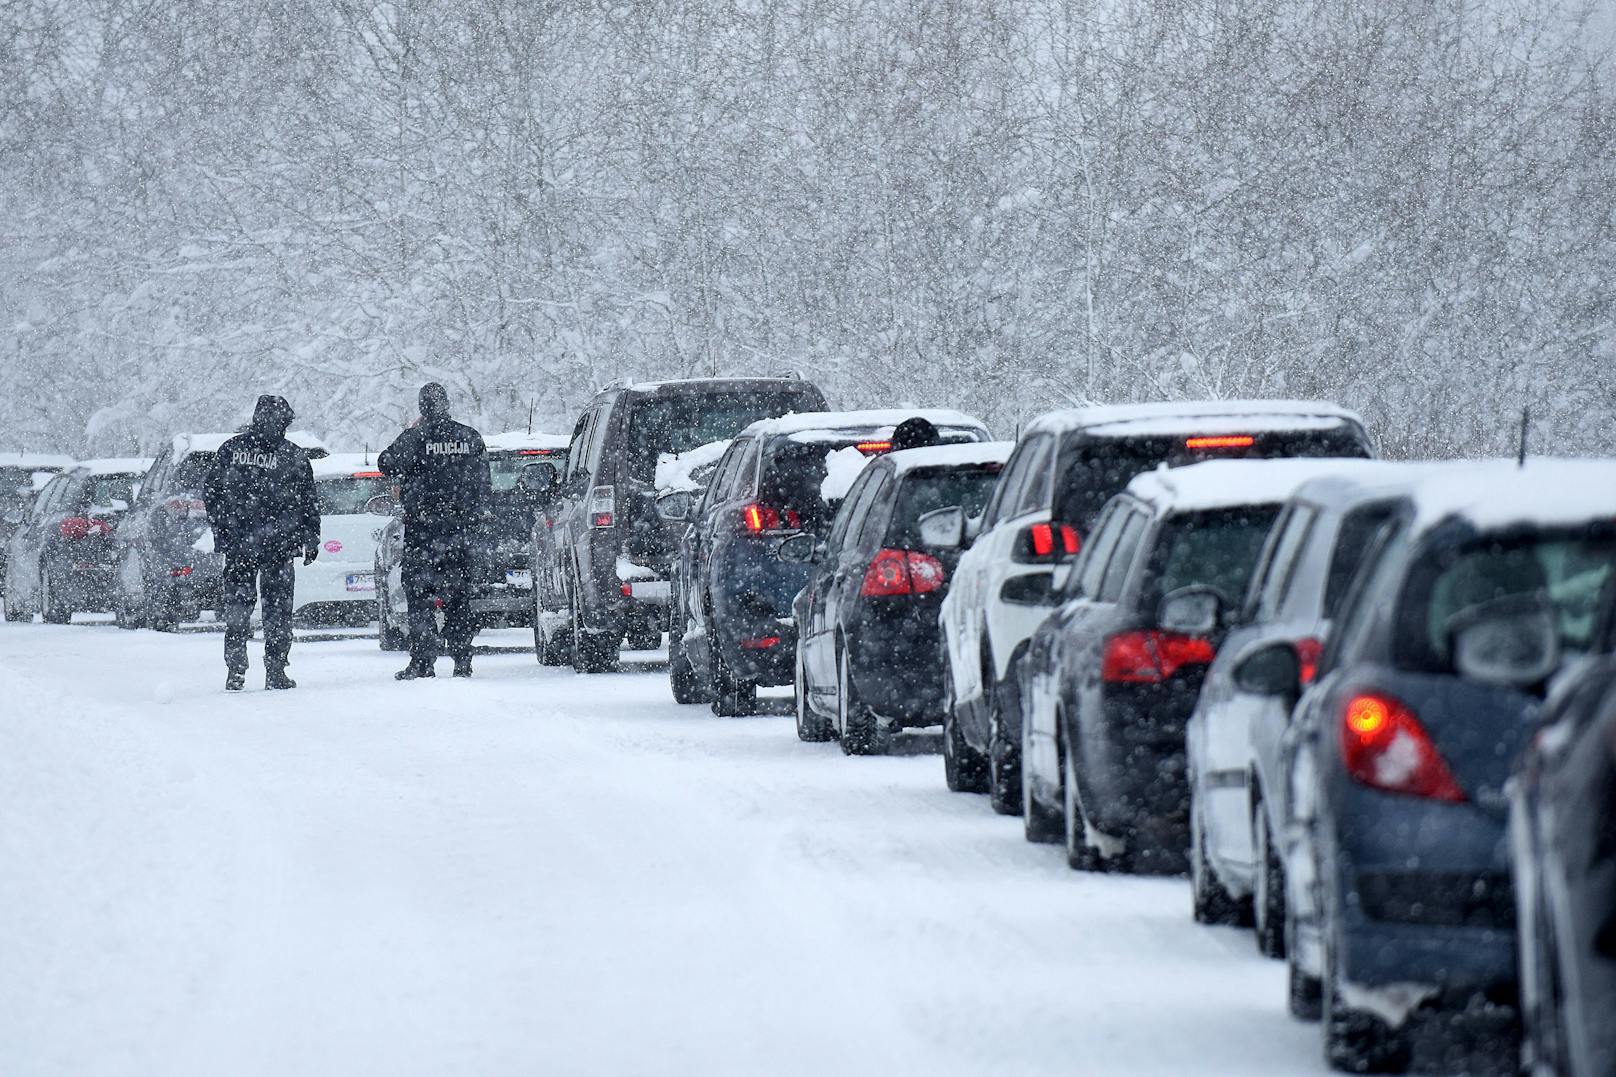 Hunderte Menschen haben in Kroatien die Nacht in ihren Autos oder in Cafés und Aufnahmezentren verbracht, nachdem orkanartige Bora-Winde gepaart mit heftigen Schneefällen ein Verkehrs-Chaos verursacht und Teile des Landes abgeschnitten haben.